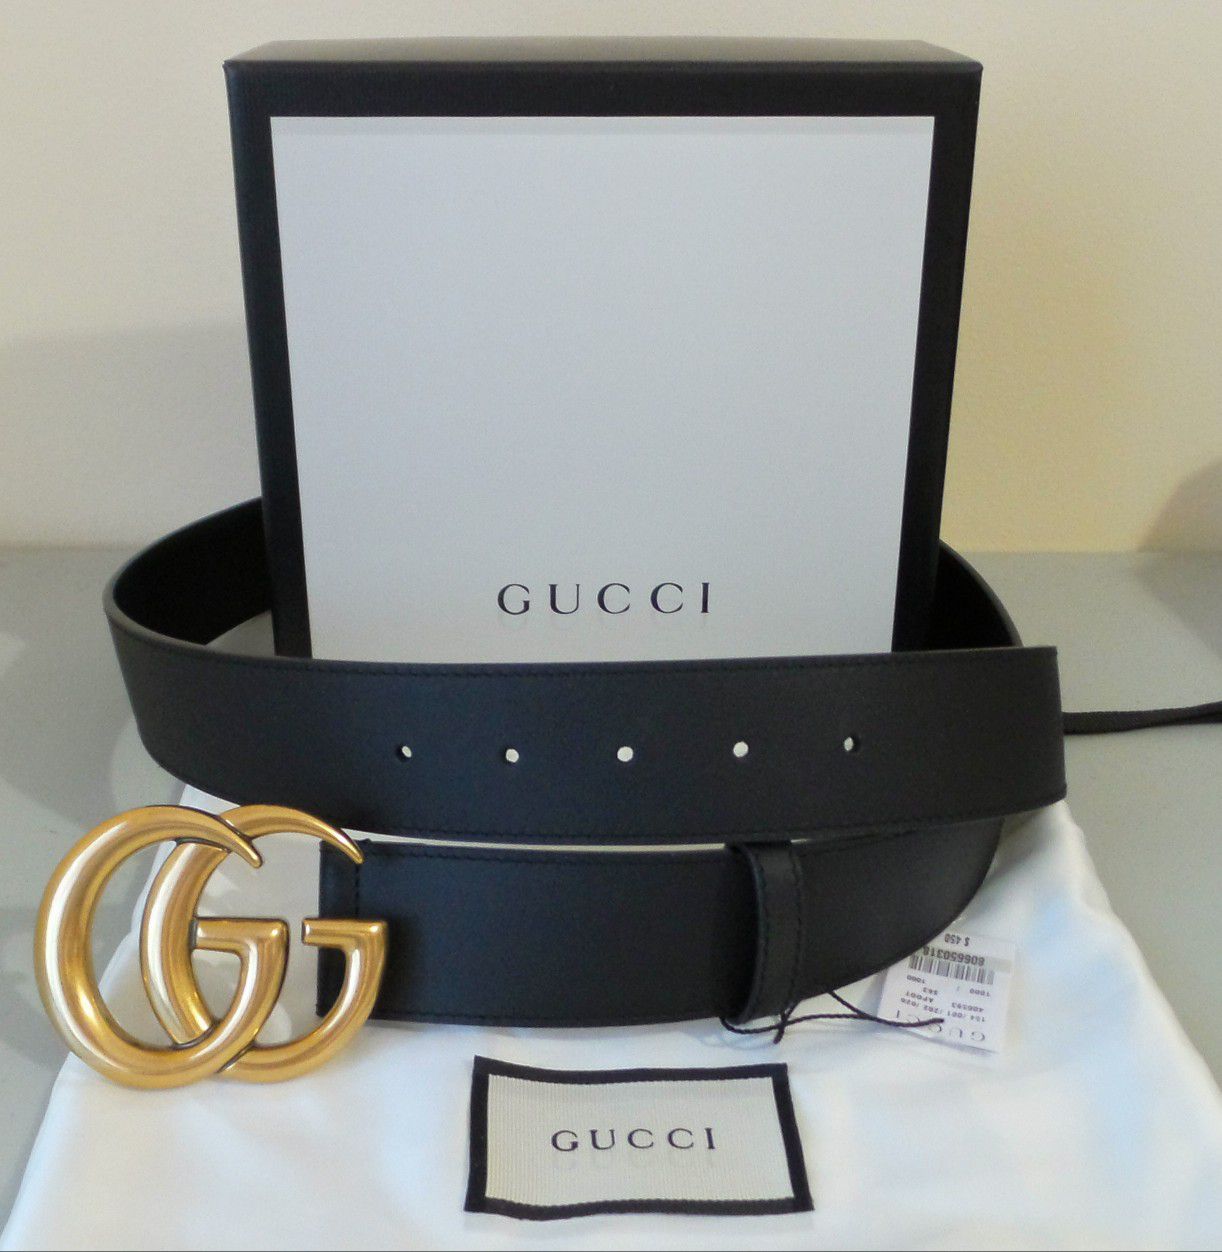 New Gucci Marmont Belt Black louis Vuitton LV Versace Ferragamo fendi wallet bag